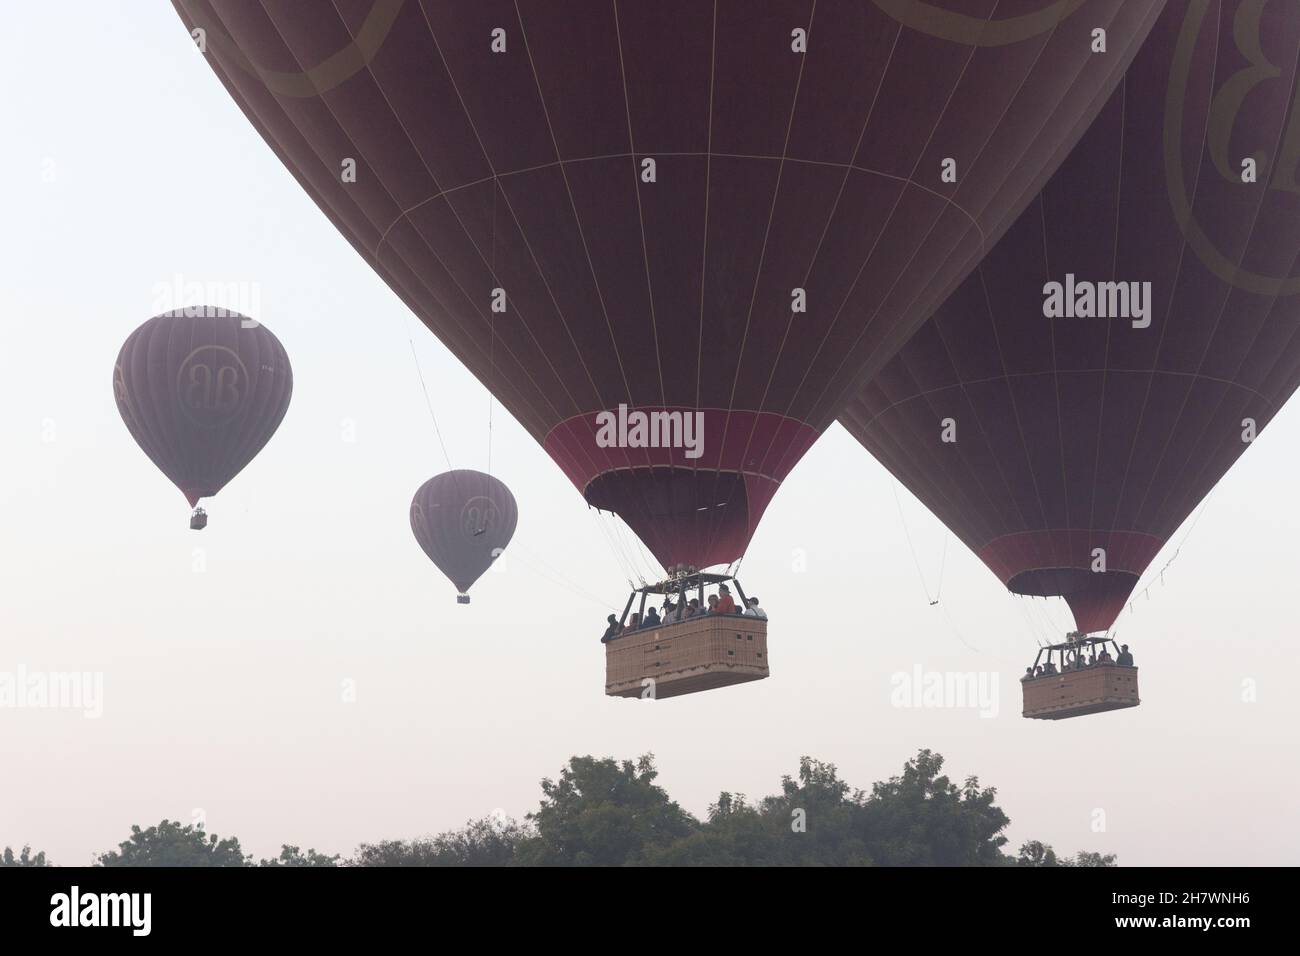 Heißluftballons starten, um das Tal zu erkunden Stockfoto